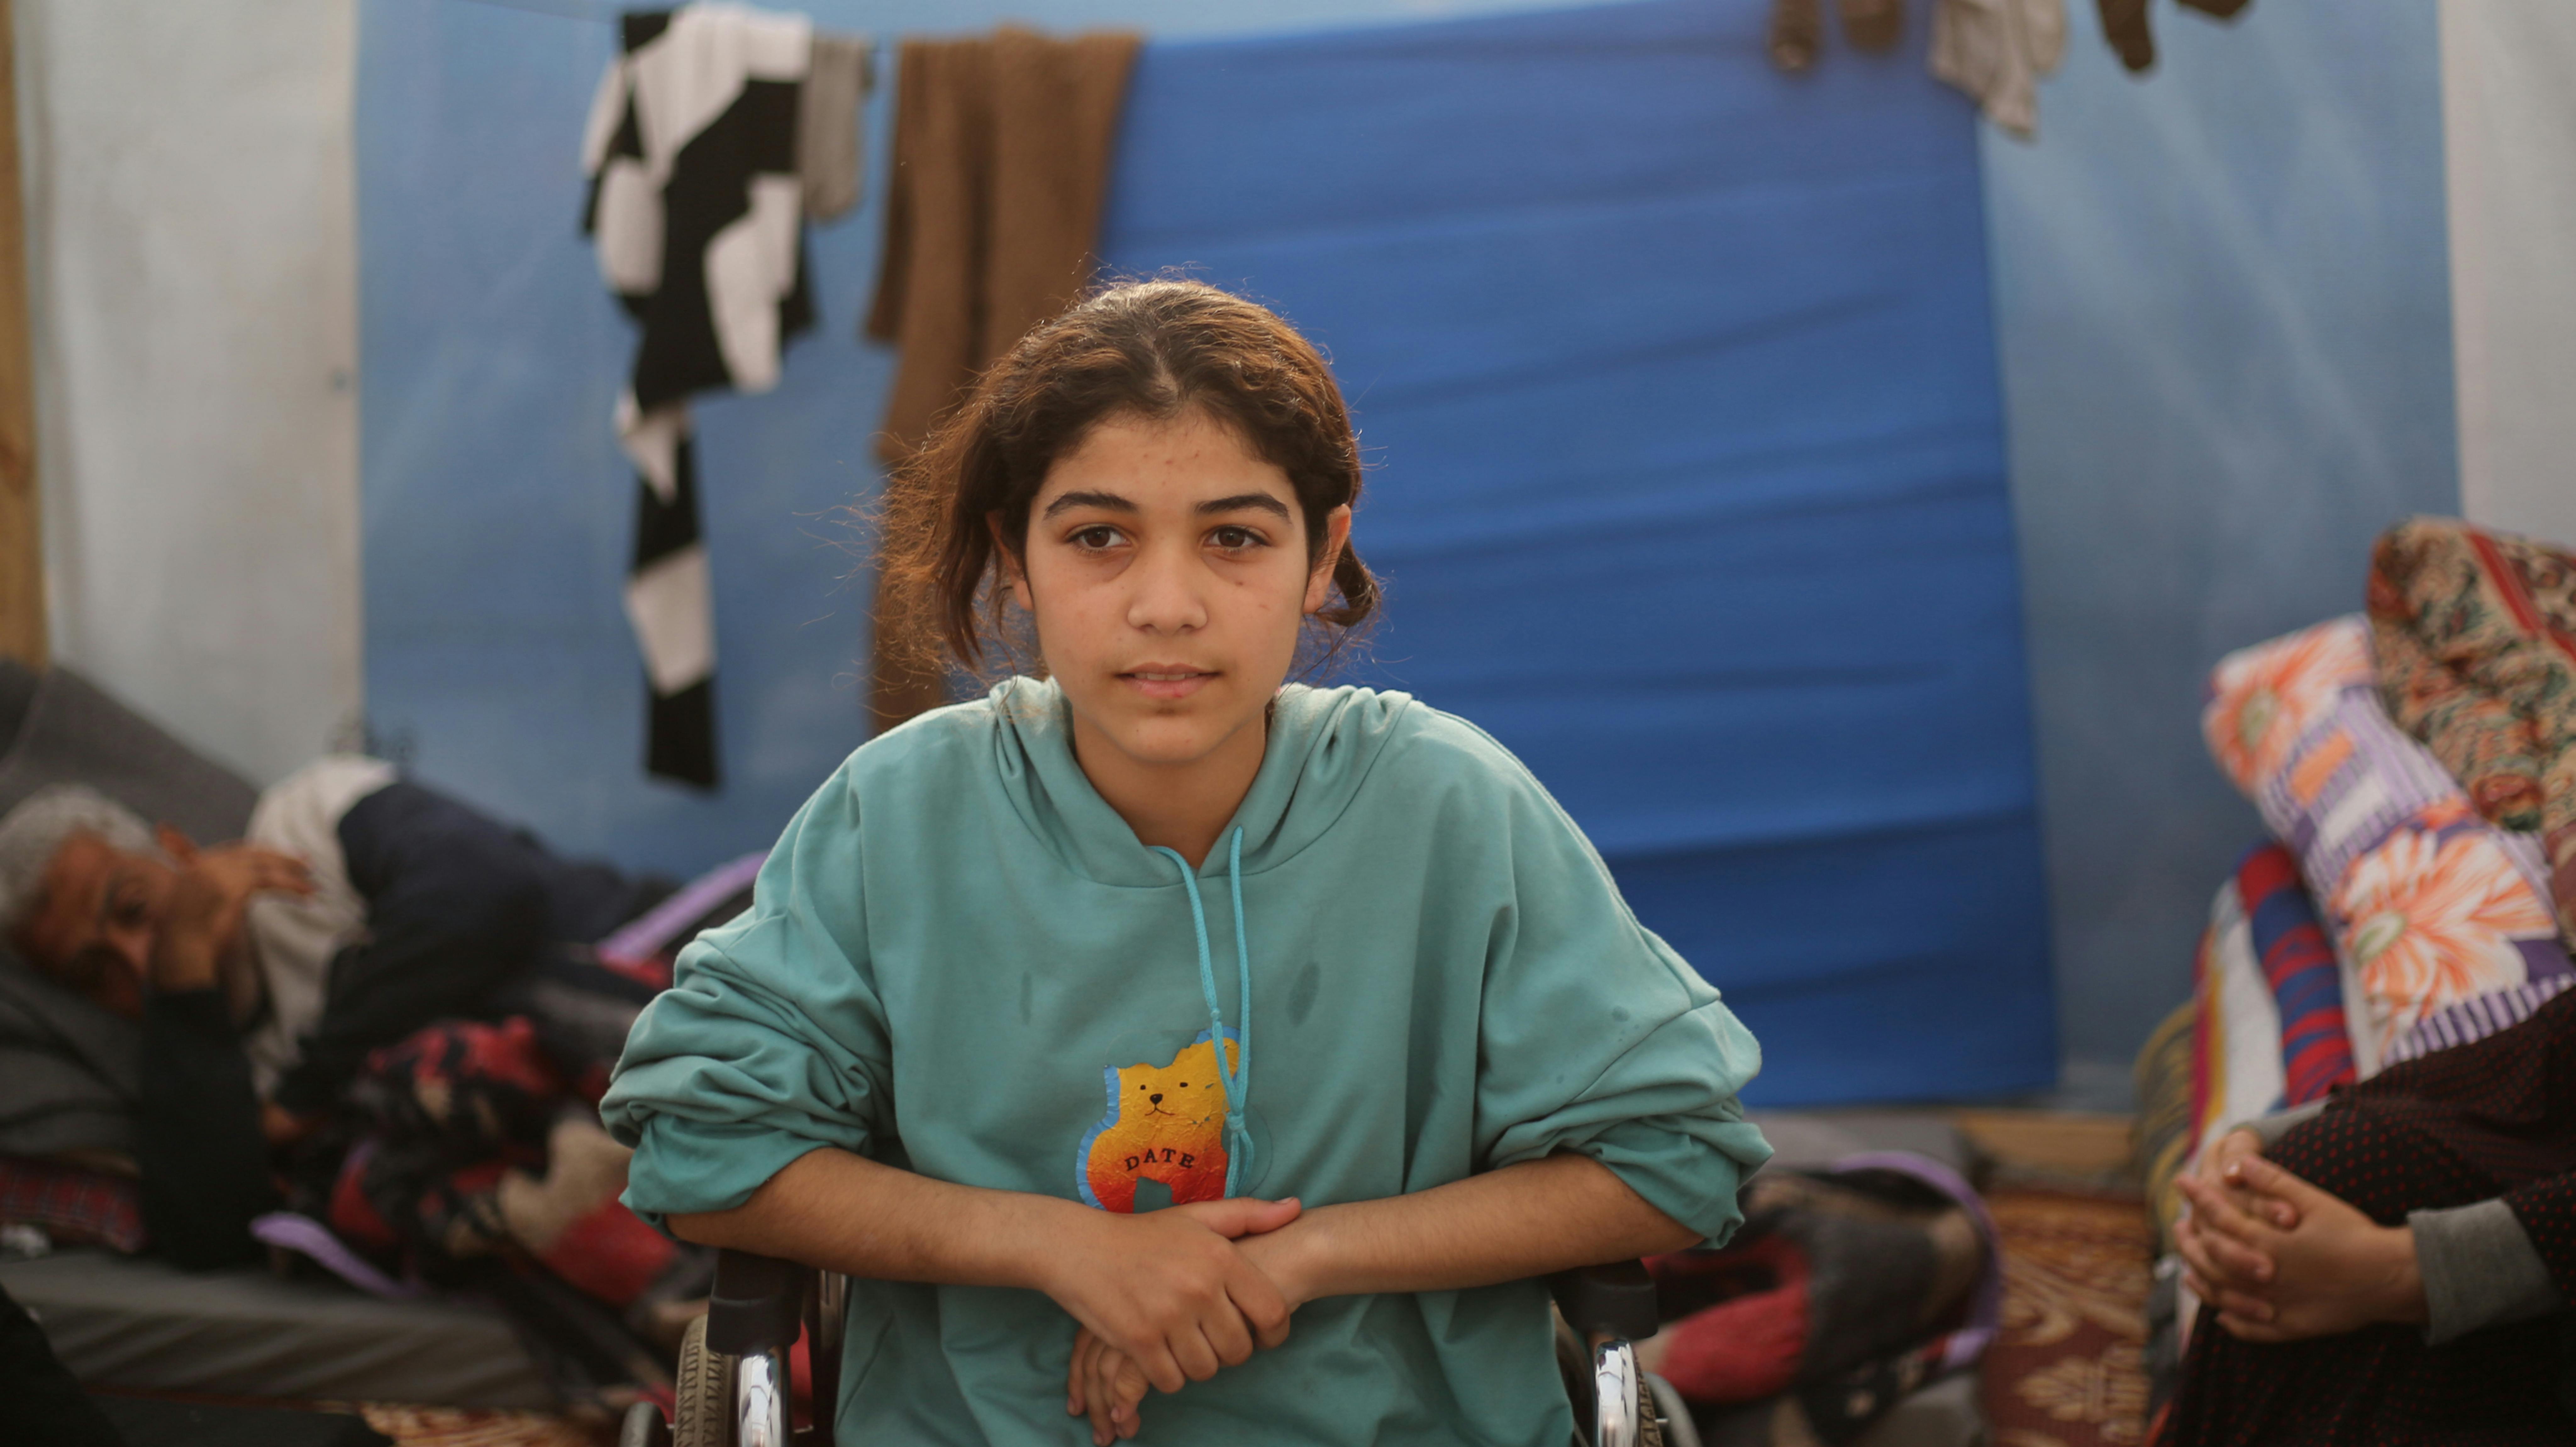 ​Razan ha perso la madre, il padre e i suoi 3 fratelli durante l'escalation delle ostilità nella Striscia di Gaza.